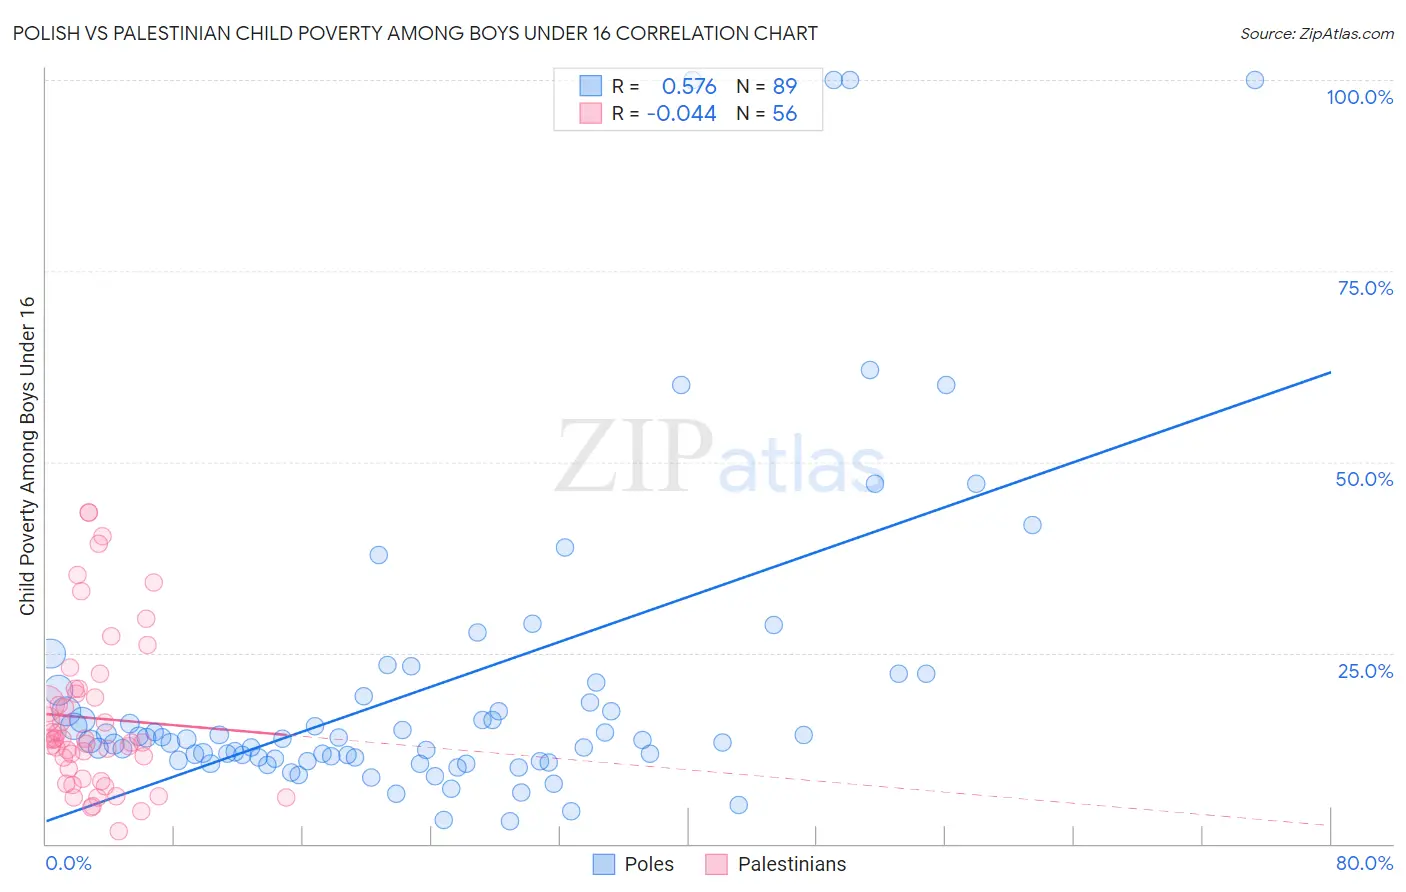 Polish vs Palestinian Child Poverty Among Boys Under 16